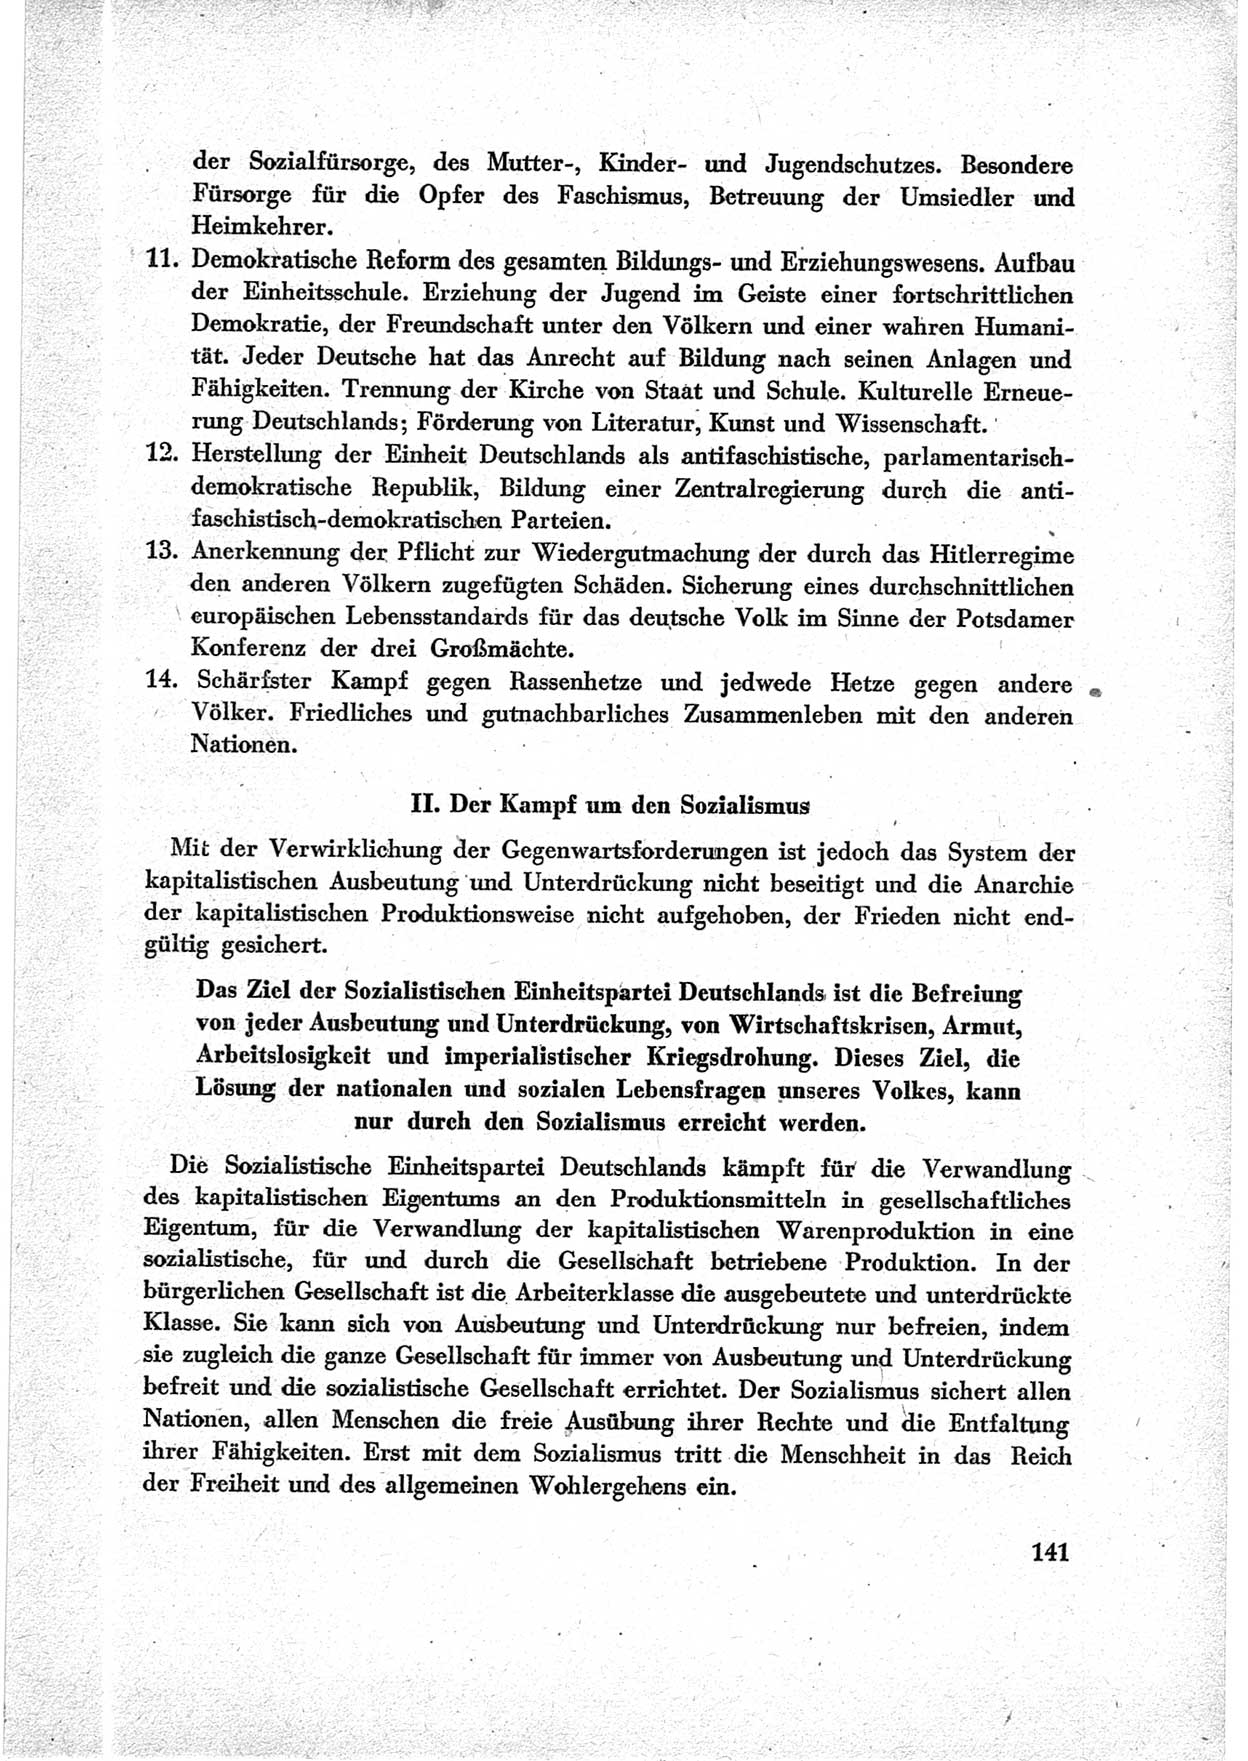 40. Parteitag der Sozialdemokratischen Partei Deutschlands (SPD) [Sowjetische Besatzungszone (SBZ) Deutschlands] am 19. und 20. April 1946 in Berlin, Seite 141 (40. PT SPD SBZ Dtl. 1946, S. 141)